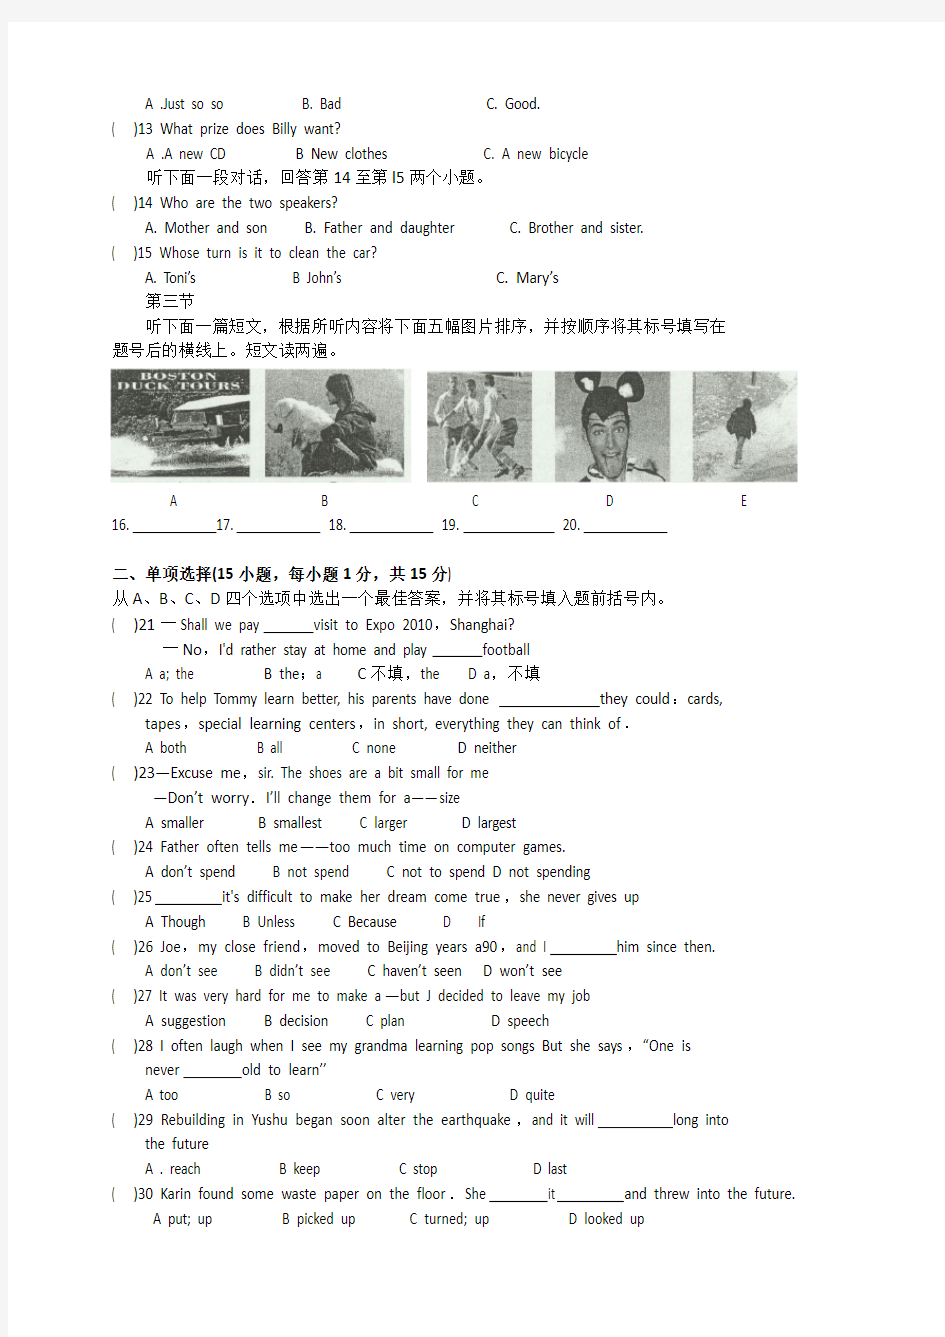 2010年河南省中考英语试题及答案